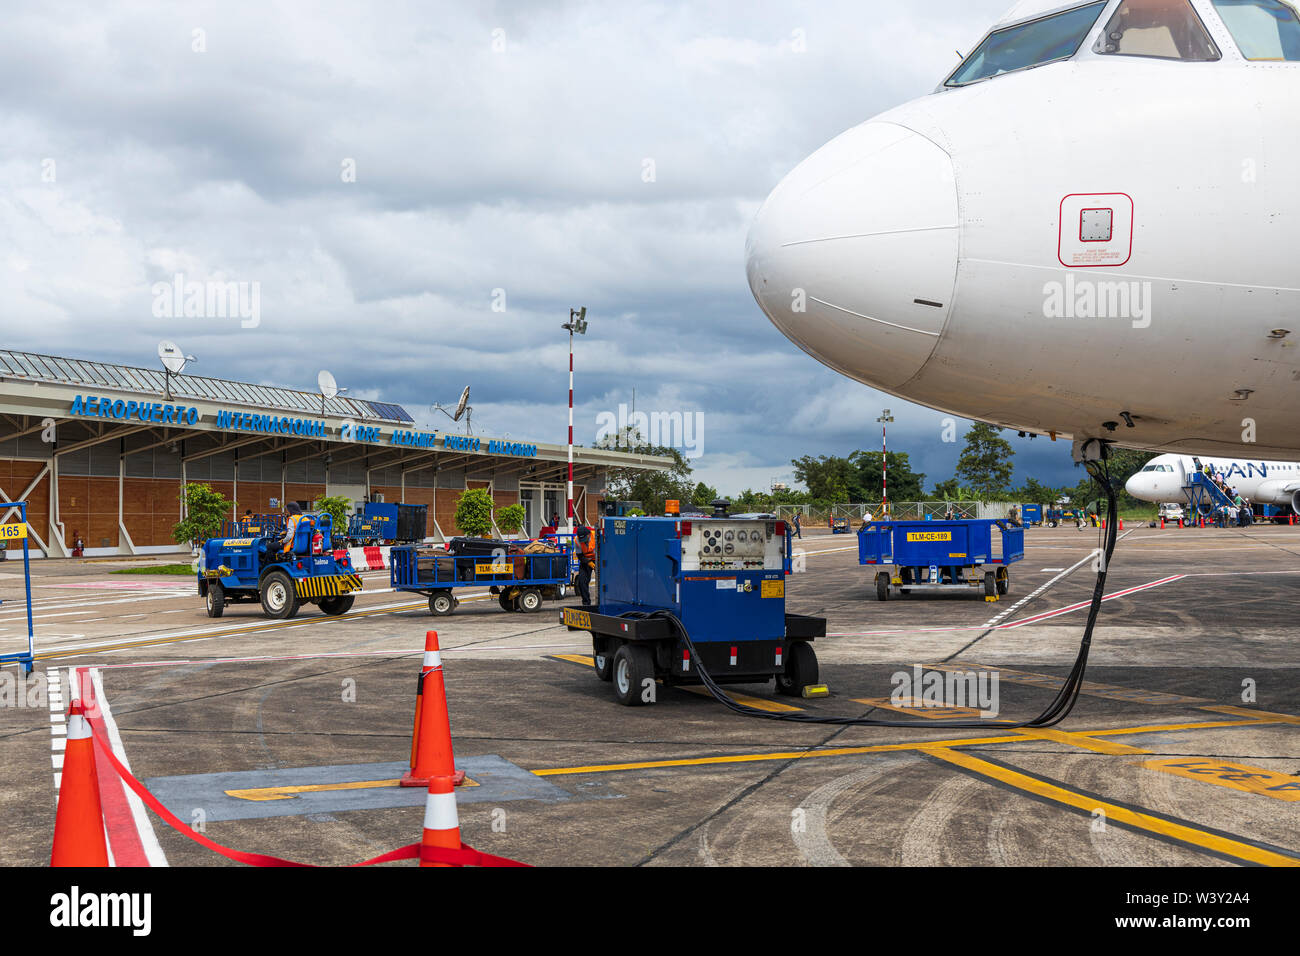 Le personnel de l'entretien d'un avion Airbus A320, à l'extérieur du terminal à l'aéroport international Padre Aldamiz, Puerto Maldonado, le Pérou, l'Am Banque D'Images